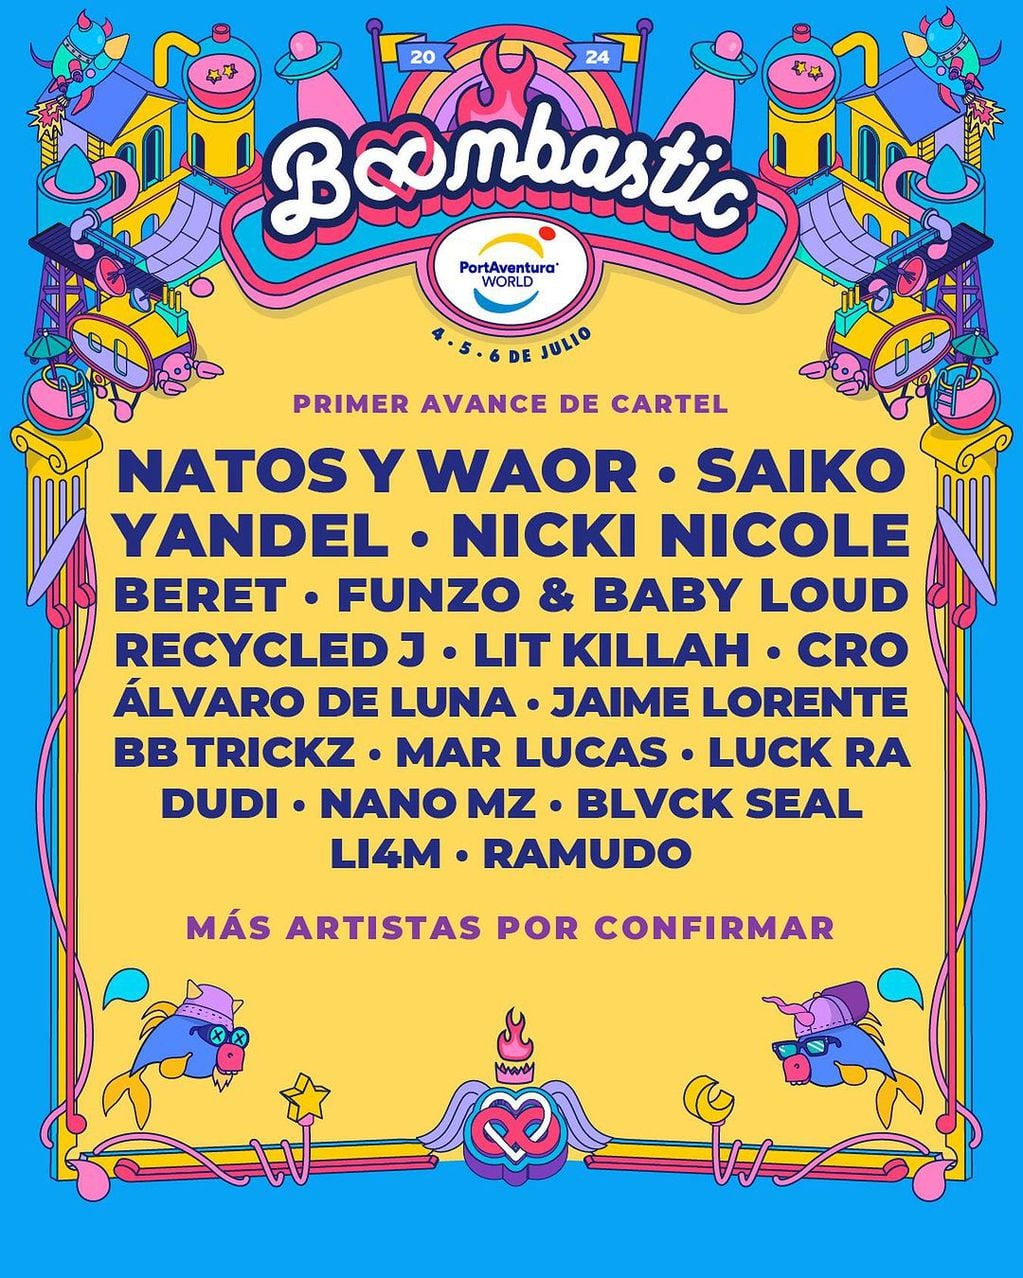 Nicki Nicole formará parte del festival Bombastic de España.